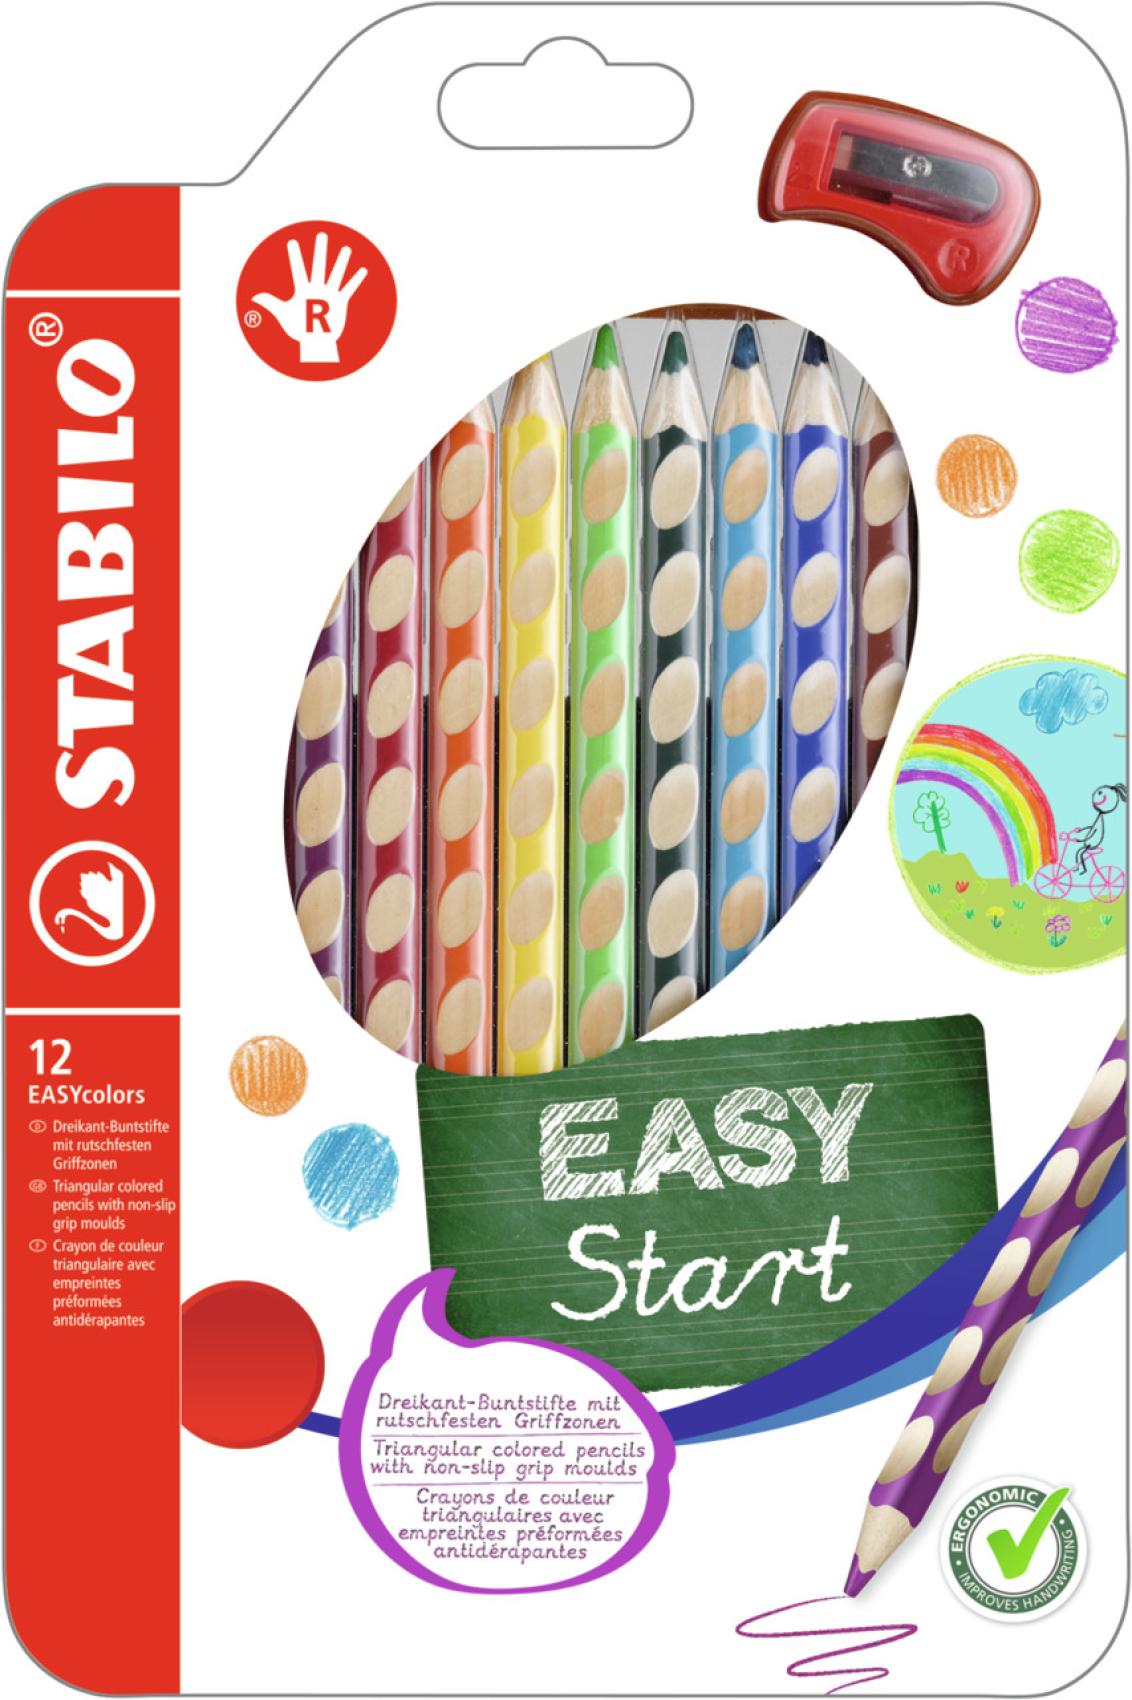 Pastelky Stabilo EASY 12 barev pro pravky 9mm - Kliknutm na obrzek zavete